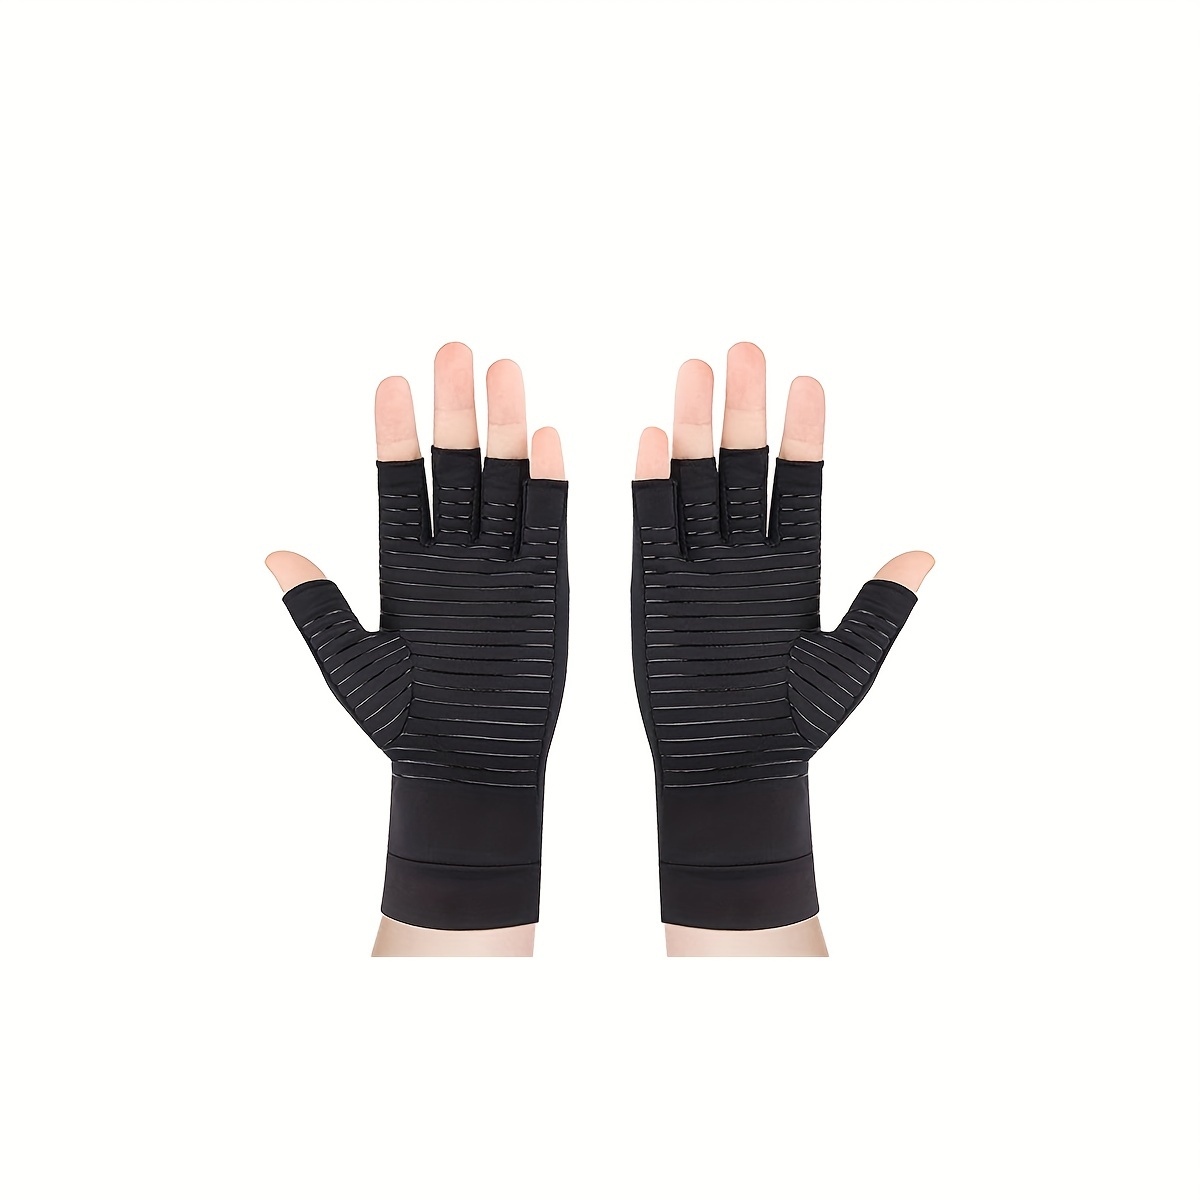 Copper Fit Compression Gloves Guantes de Compresión